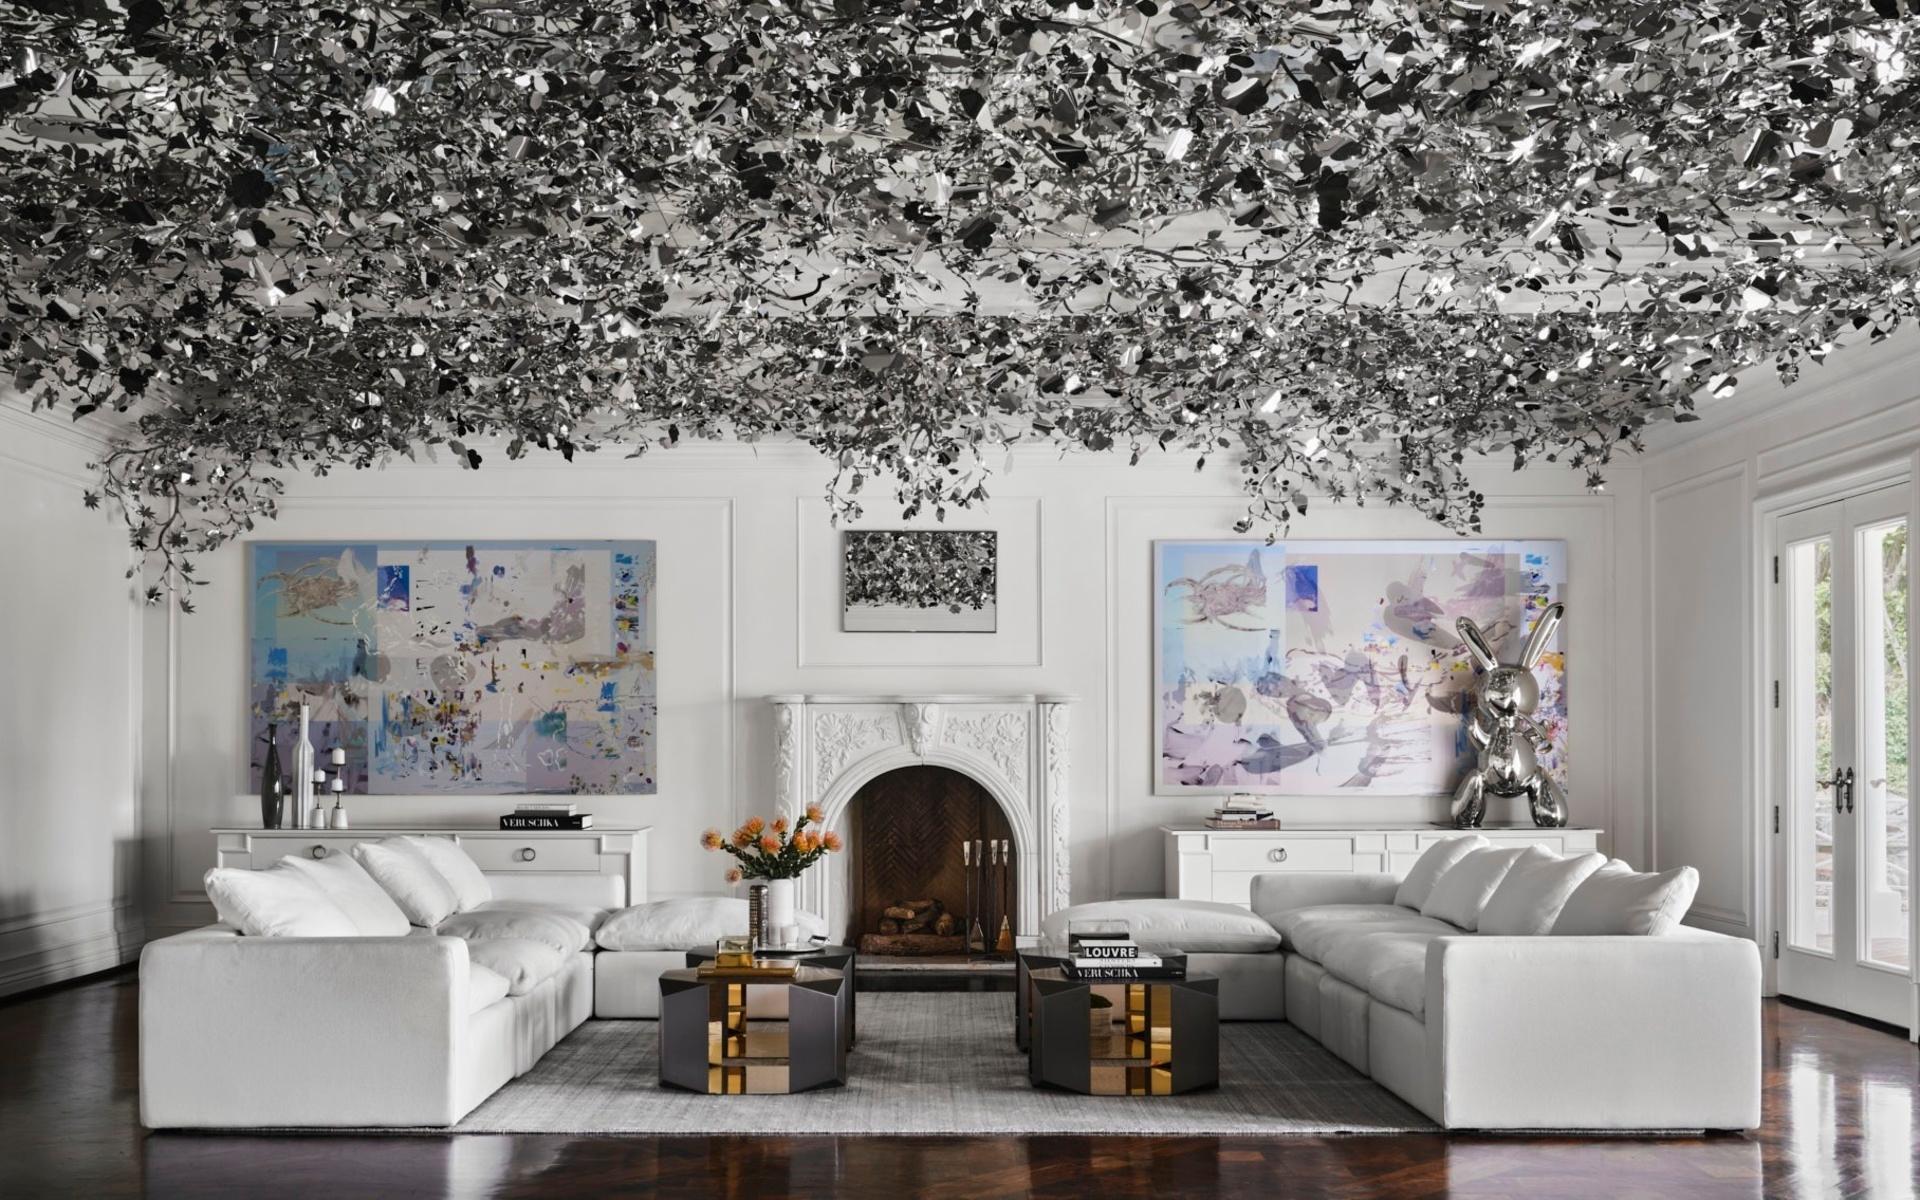 Den franske inredningsdesignern Philippe Starck ligger bakom inredningen. Det här vardagsrummet har fått en silverfärgad inredning med silver lull-lull i taket.